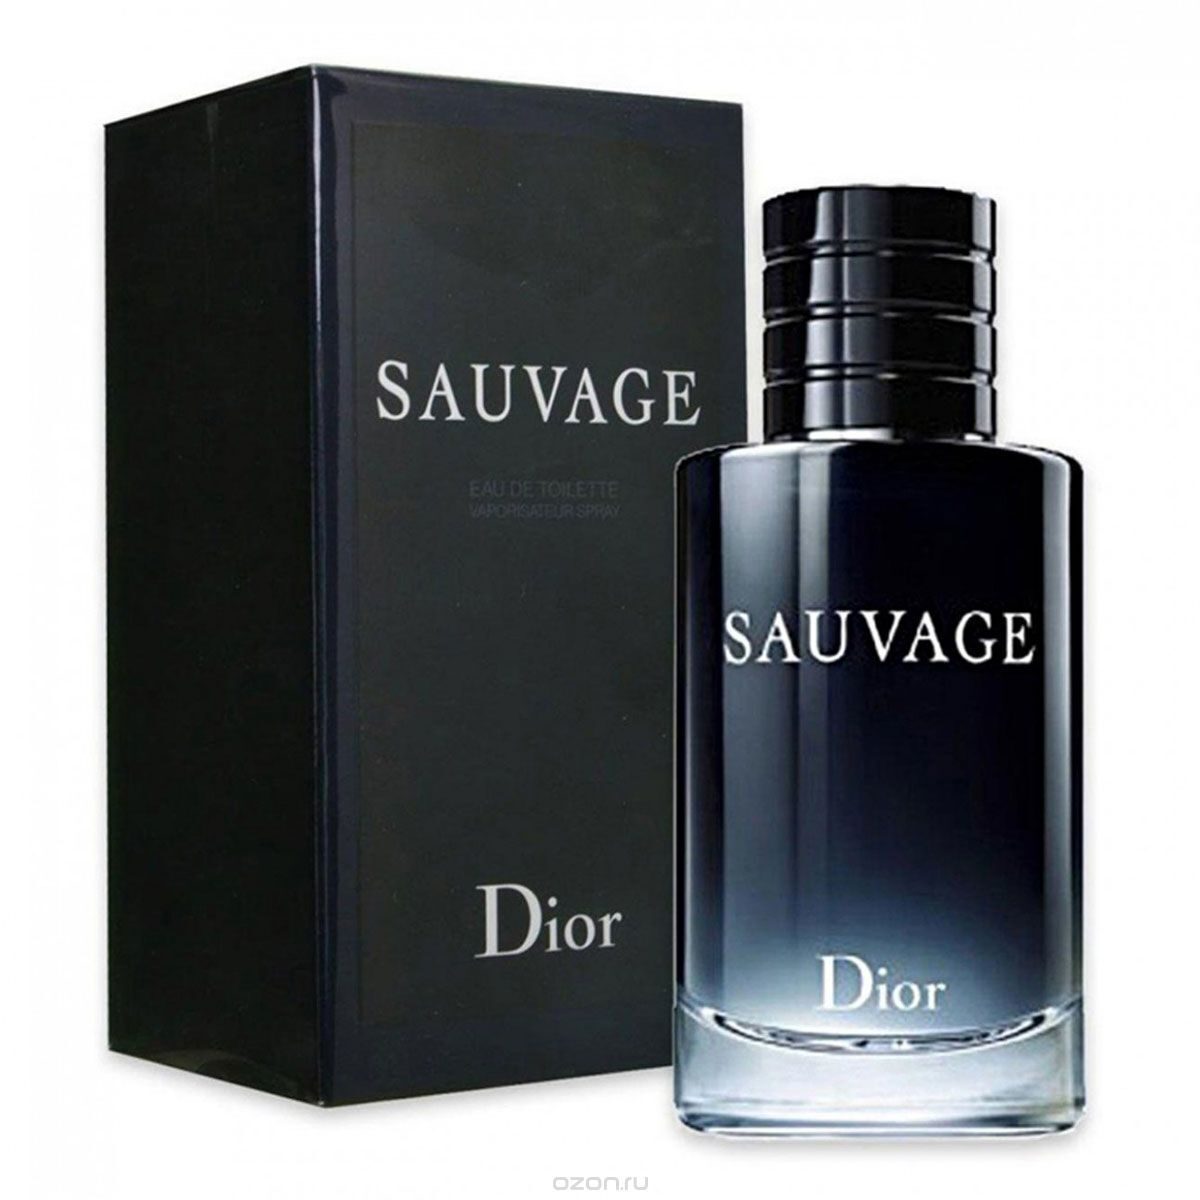 Аромат туалетной воды для мужчин. Christian Dior sauvage 100 ml. Christian Dior sauvage EDT, 100 ml. Christian Dior sauvage, 100мл. Dior sauvage EDT 100ml.